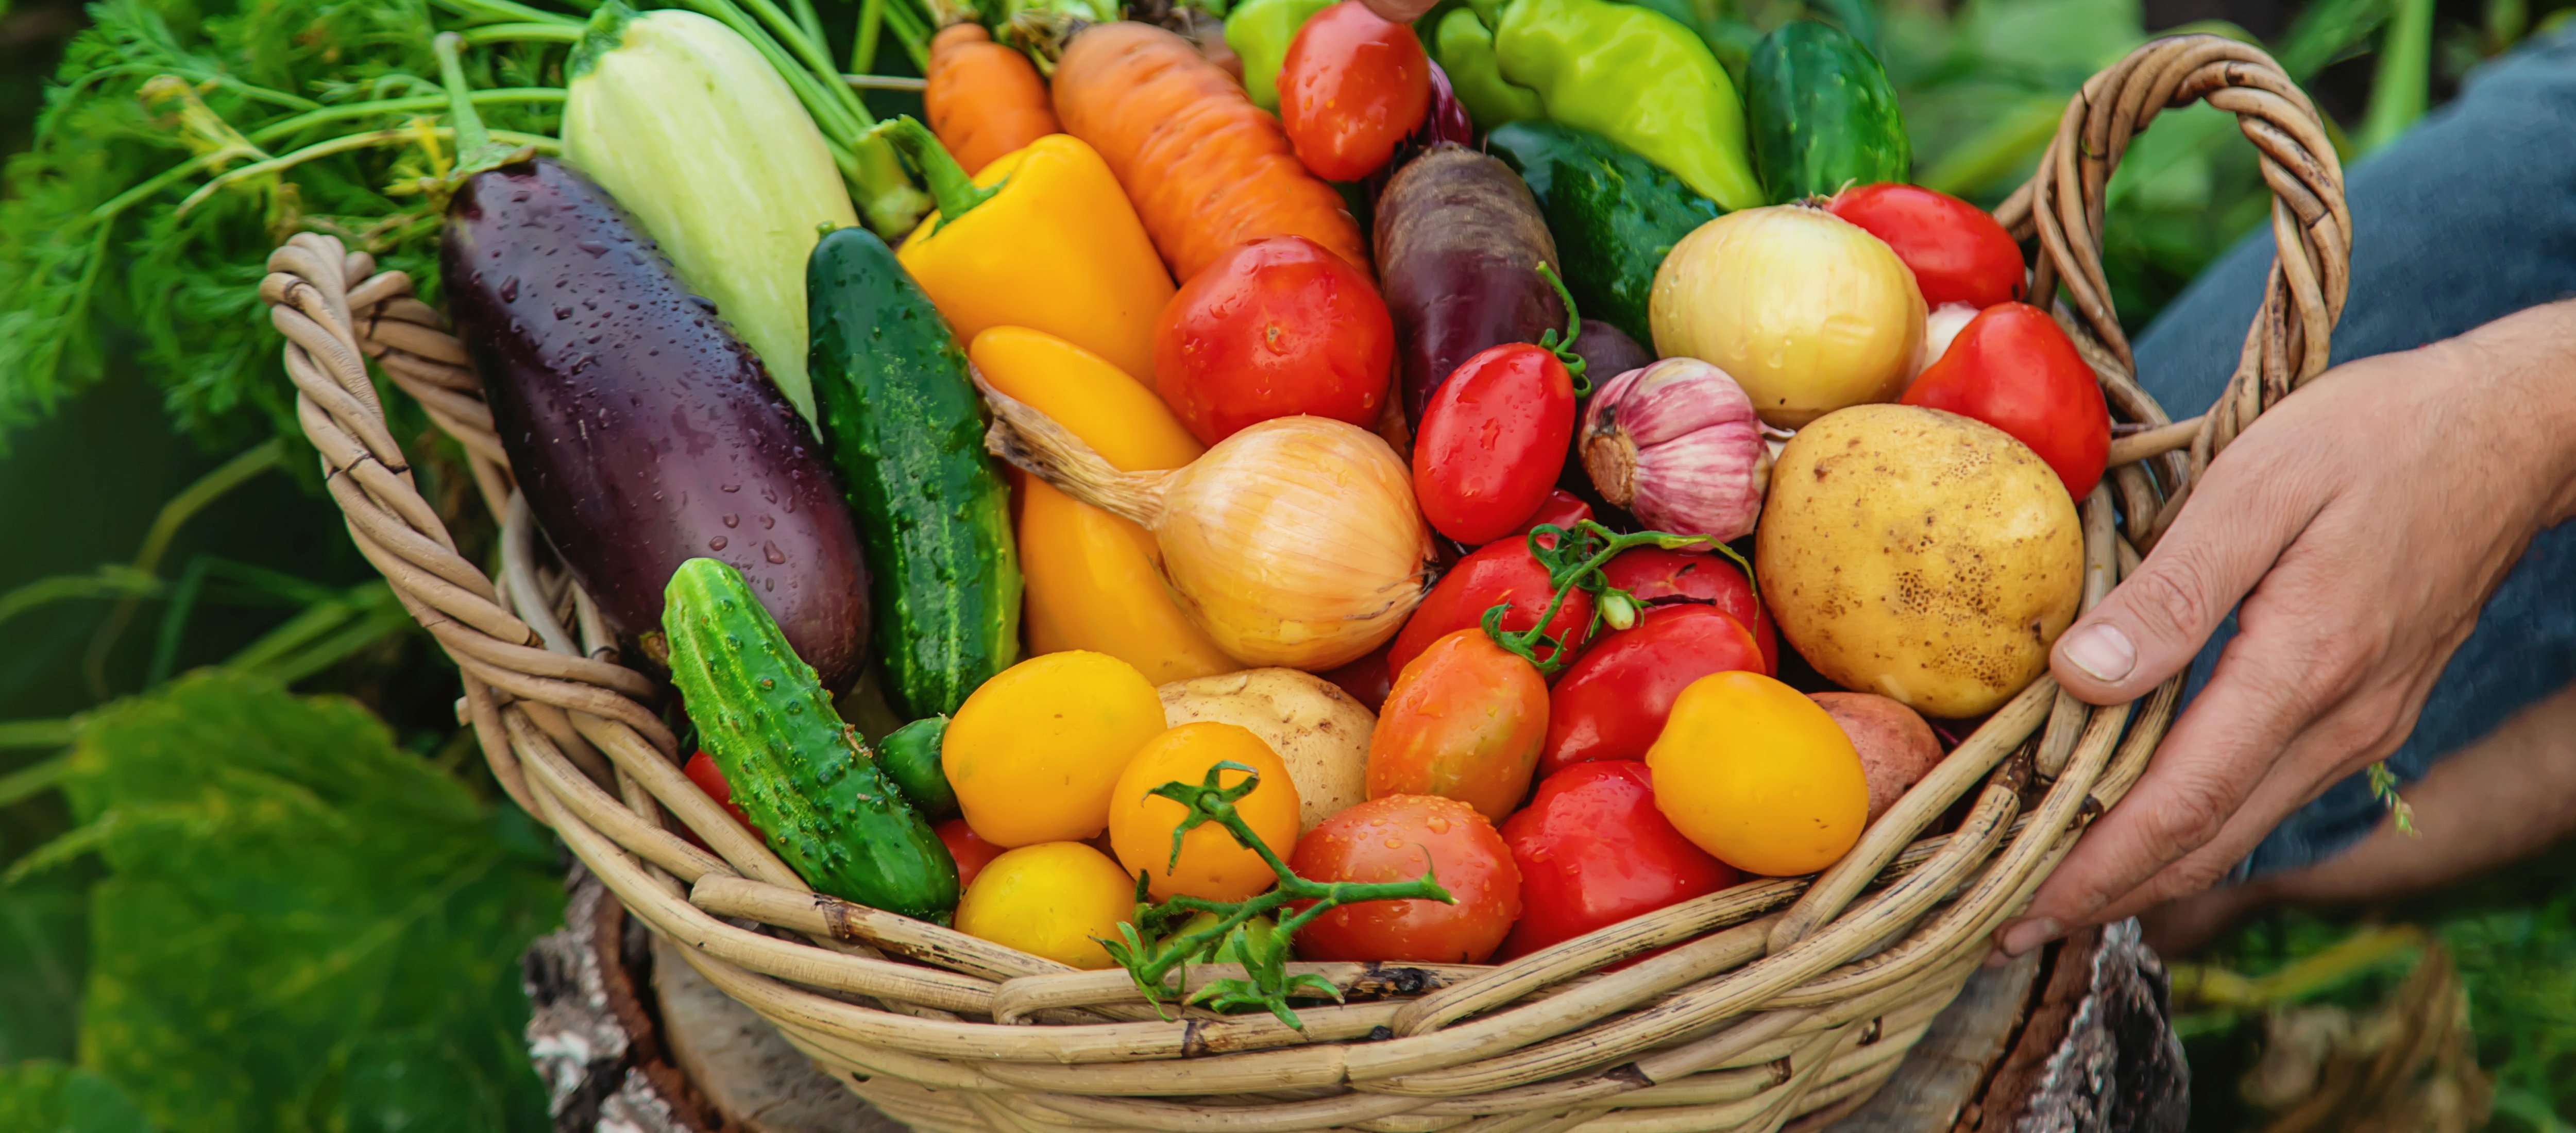 Nährstoffe für Vegetarier: Wie Nahrungsergänzungsmittel Lücken füllen können